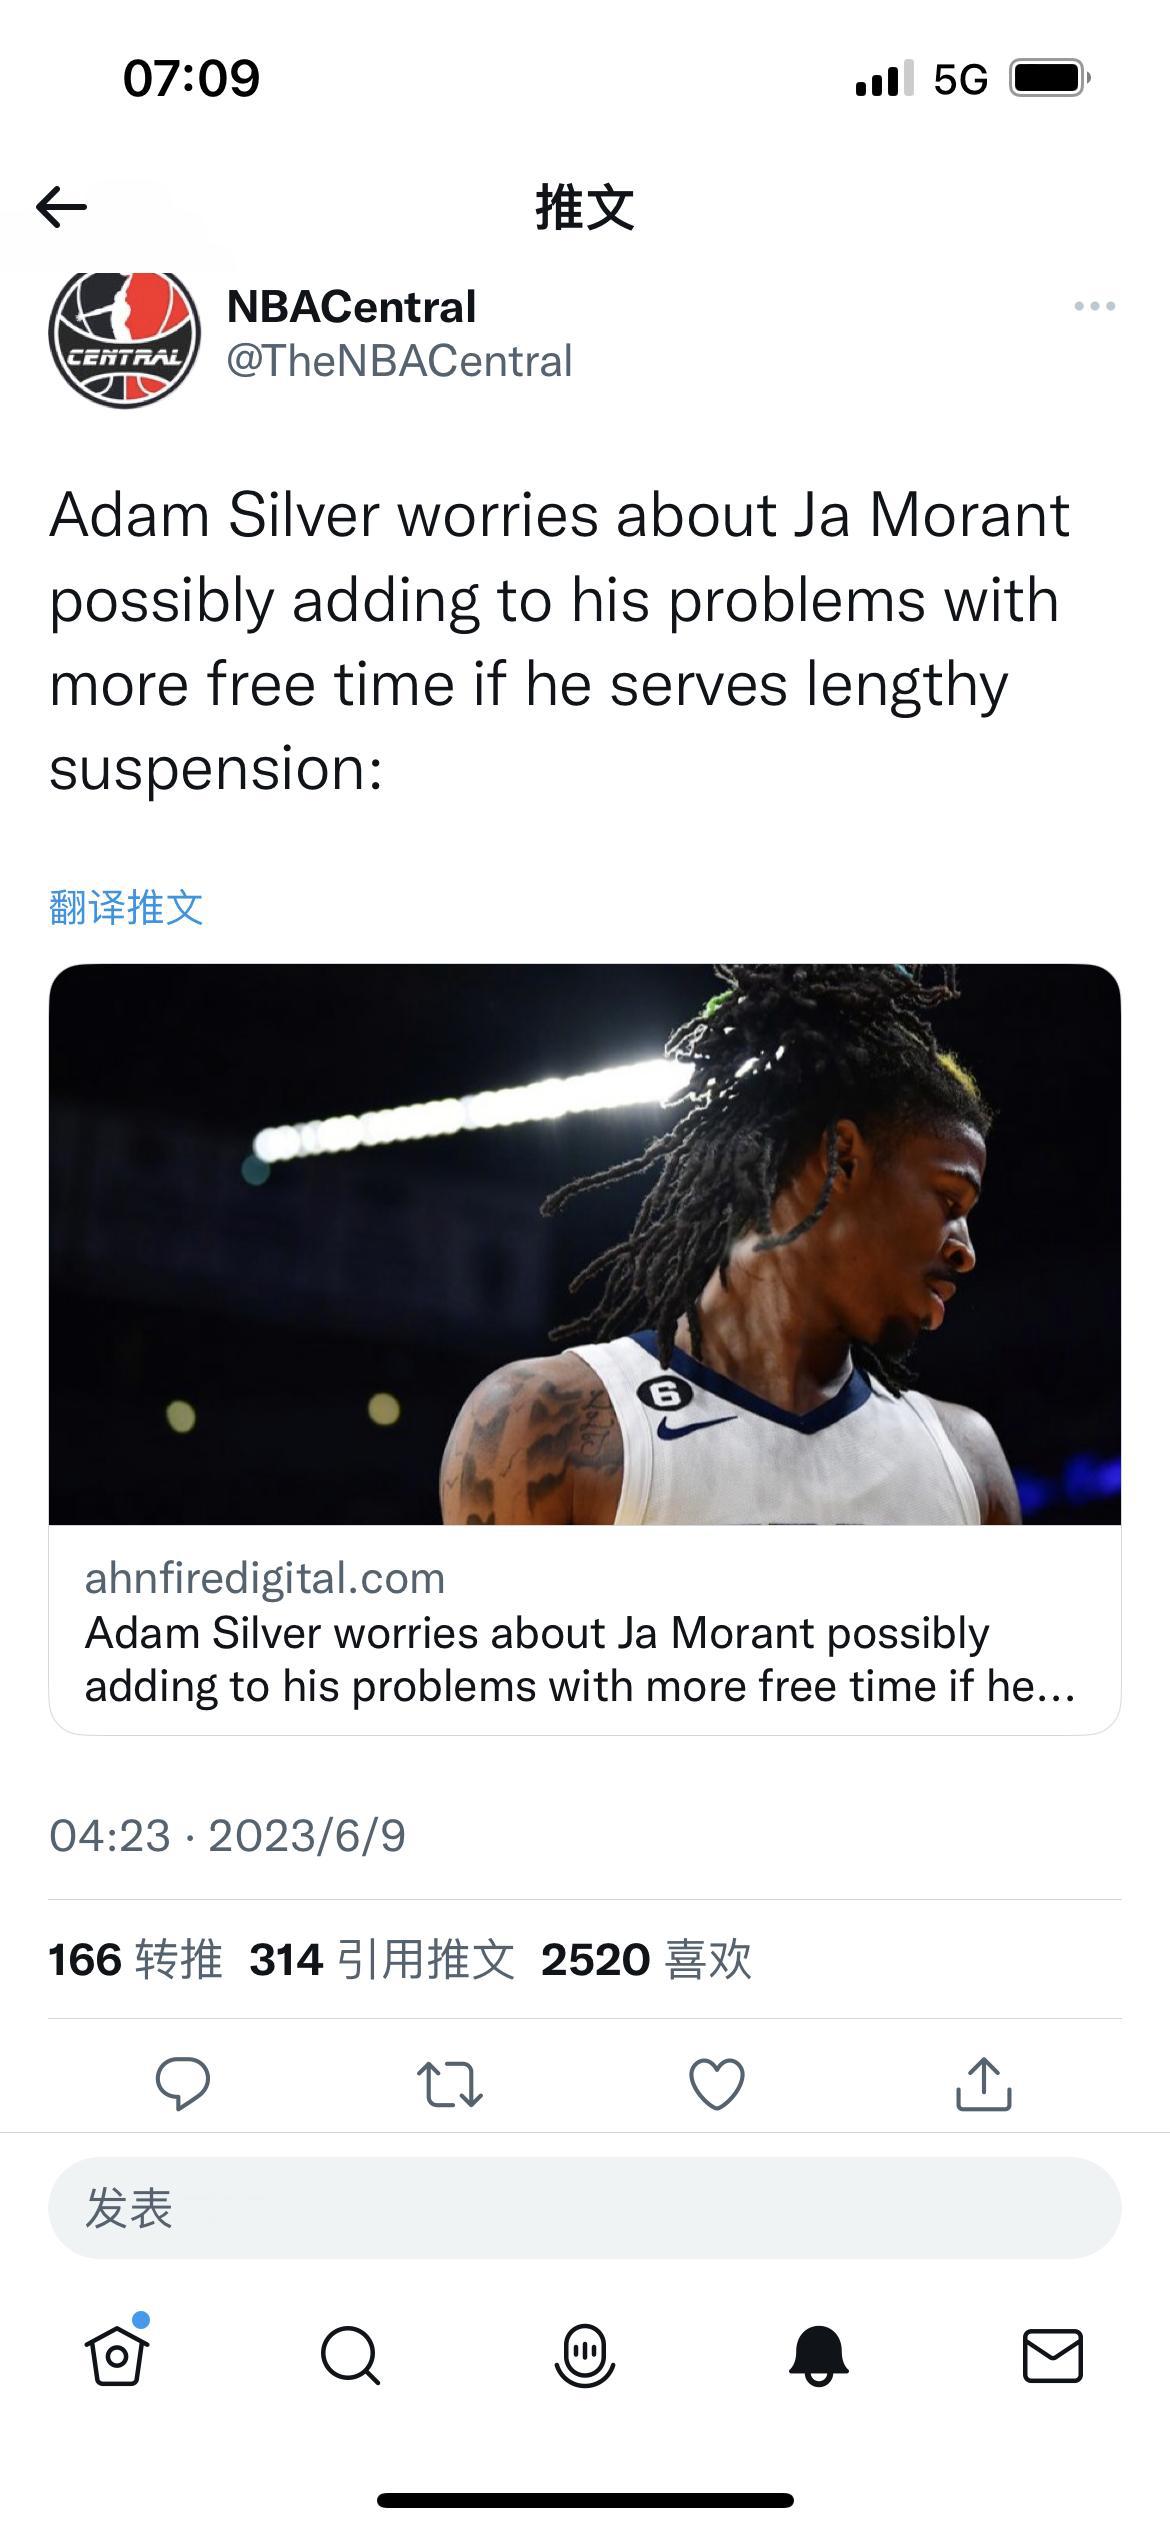 NBA总裁肖华担心，如果对莫兰特的禁赛时间太长，这就给了莫兰特更多休闲时间，害怕(1)